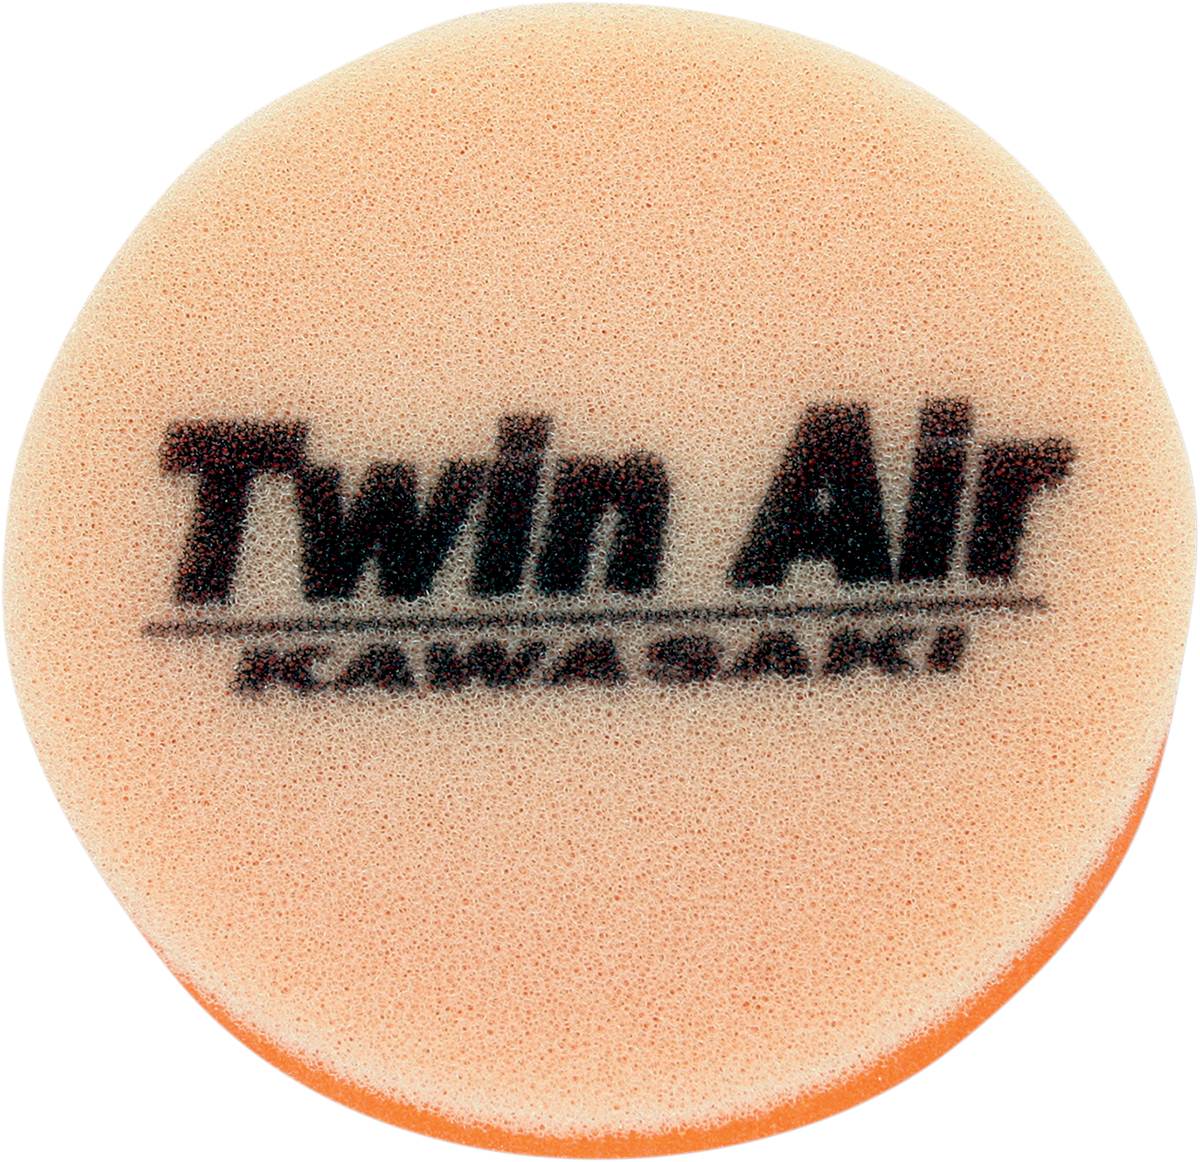 Filtre à air 151799 marque Twin air | Compatible KAWASAKI KFX 50, SUZUKI JR 50